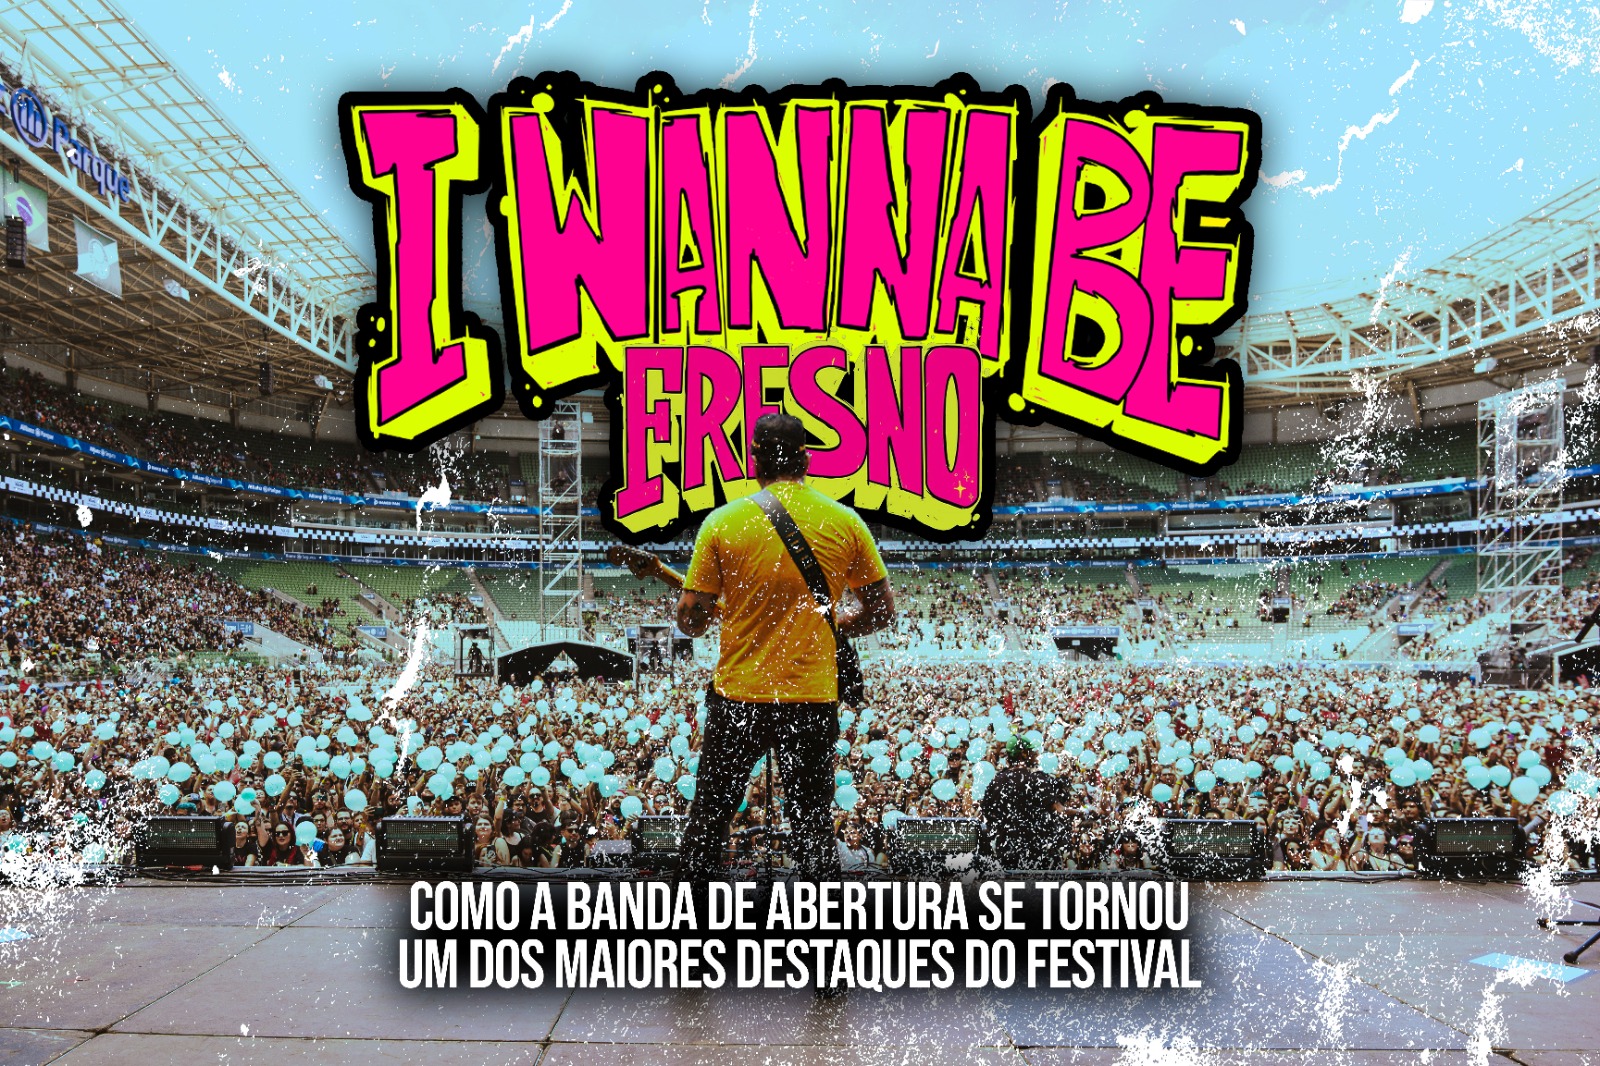 “I Wanna Be Fresno”: como a banda de abertura se tornou um dos maiores destaques do festival